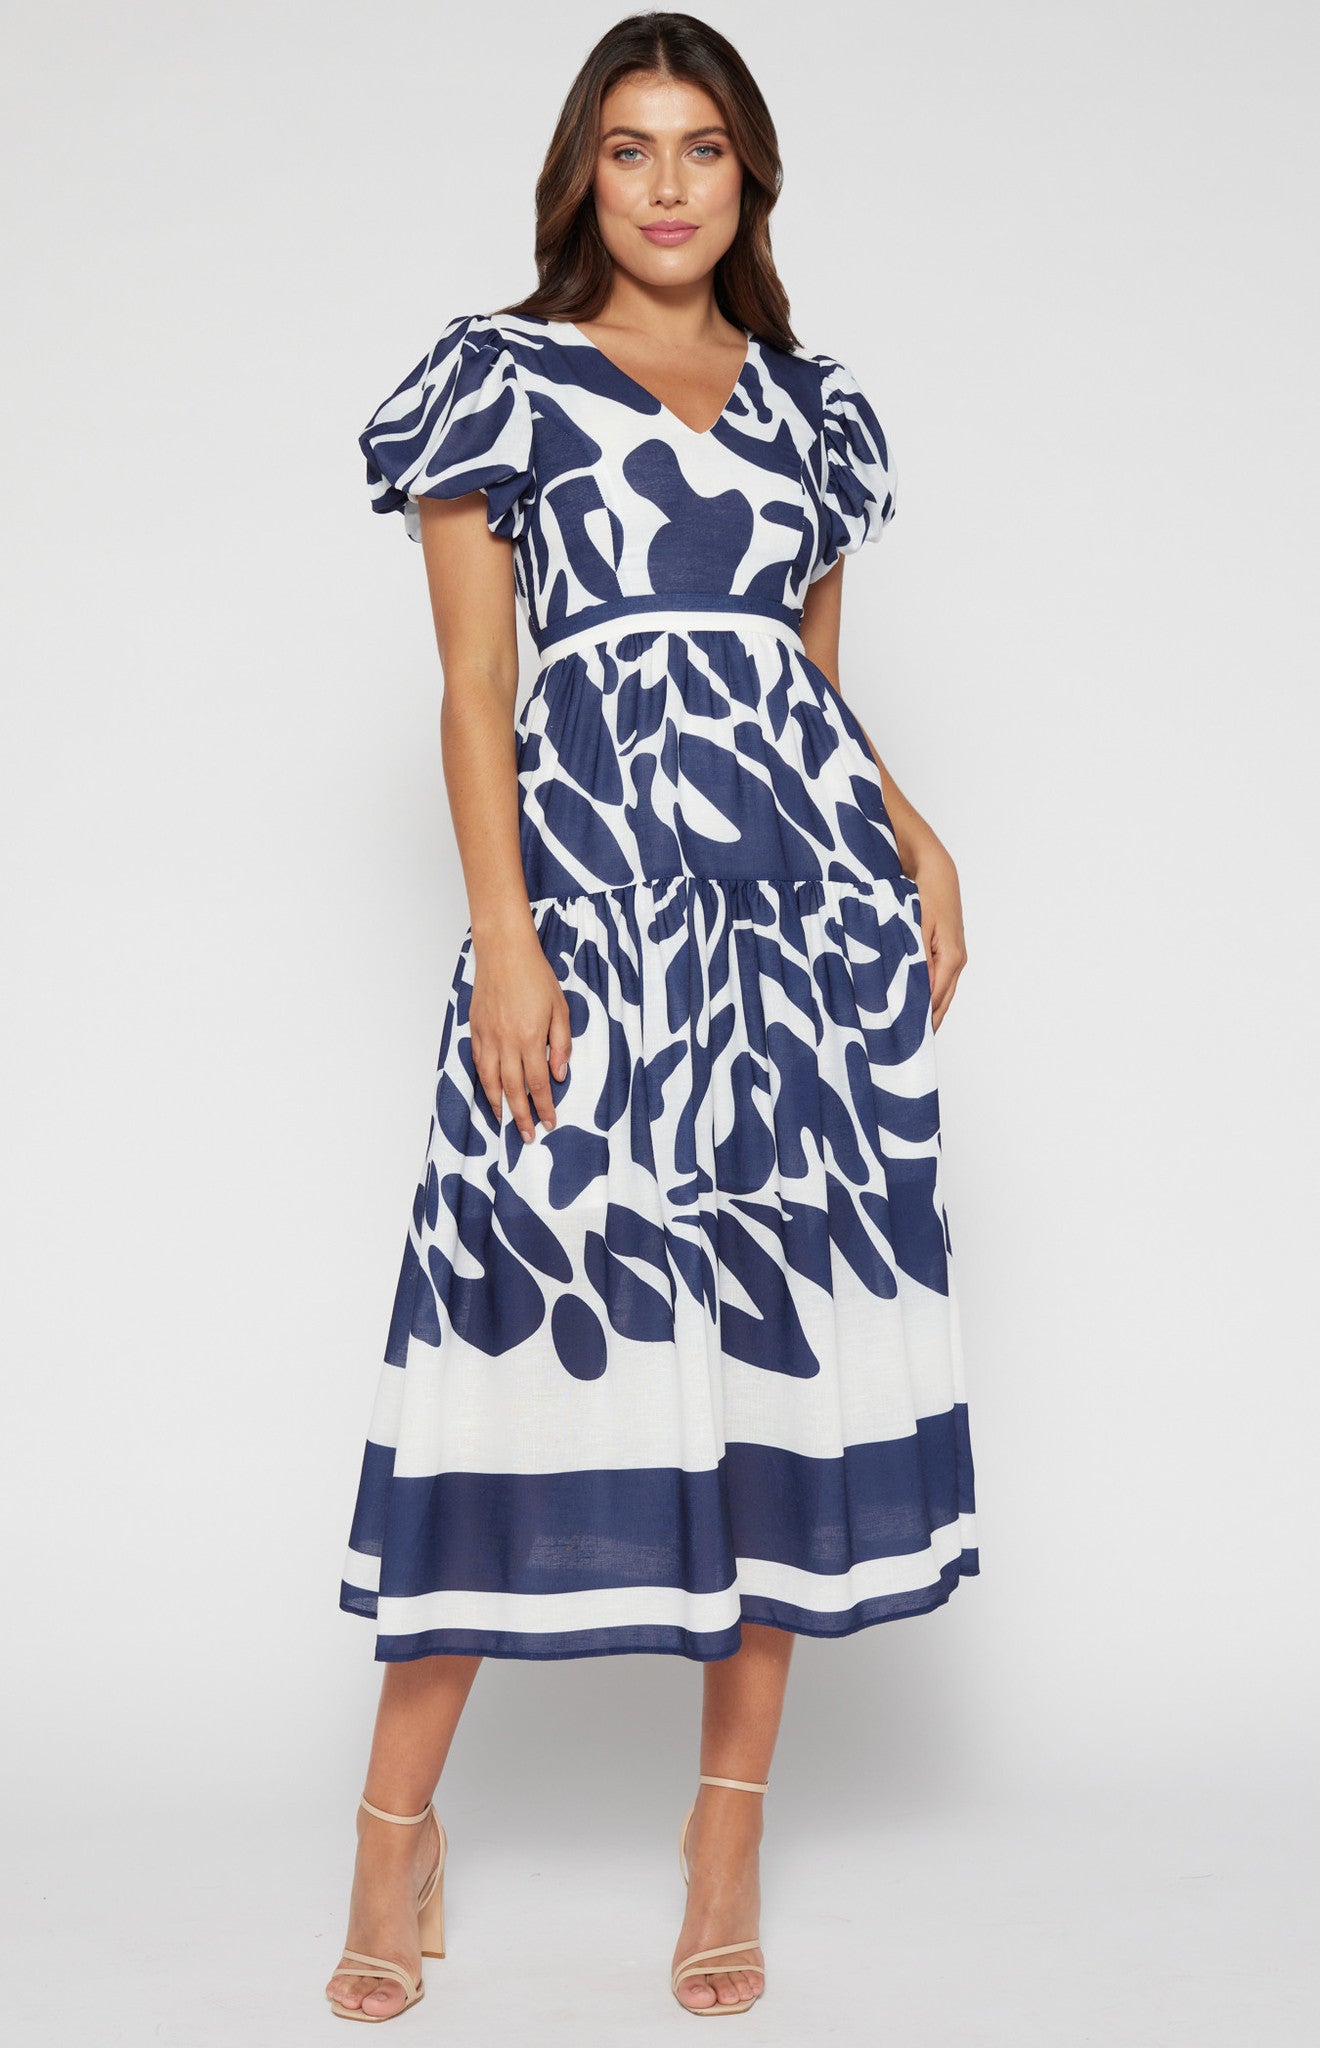 Elegant navy blue dress featuring a contrast waist panel design.